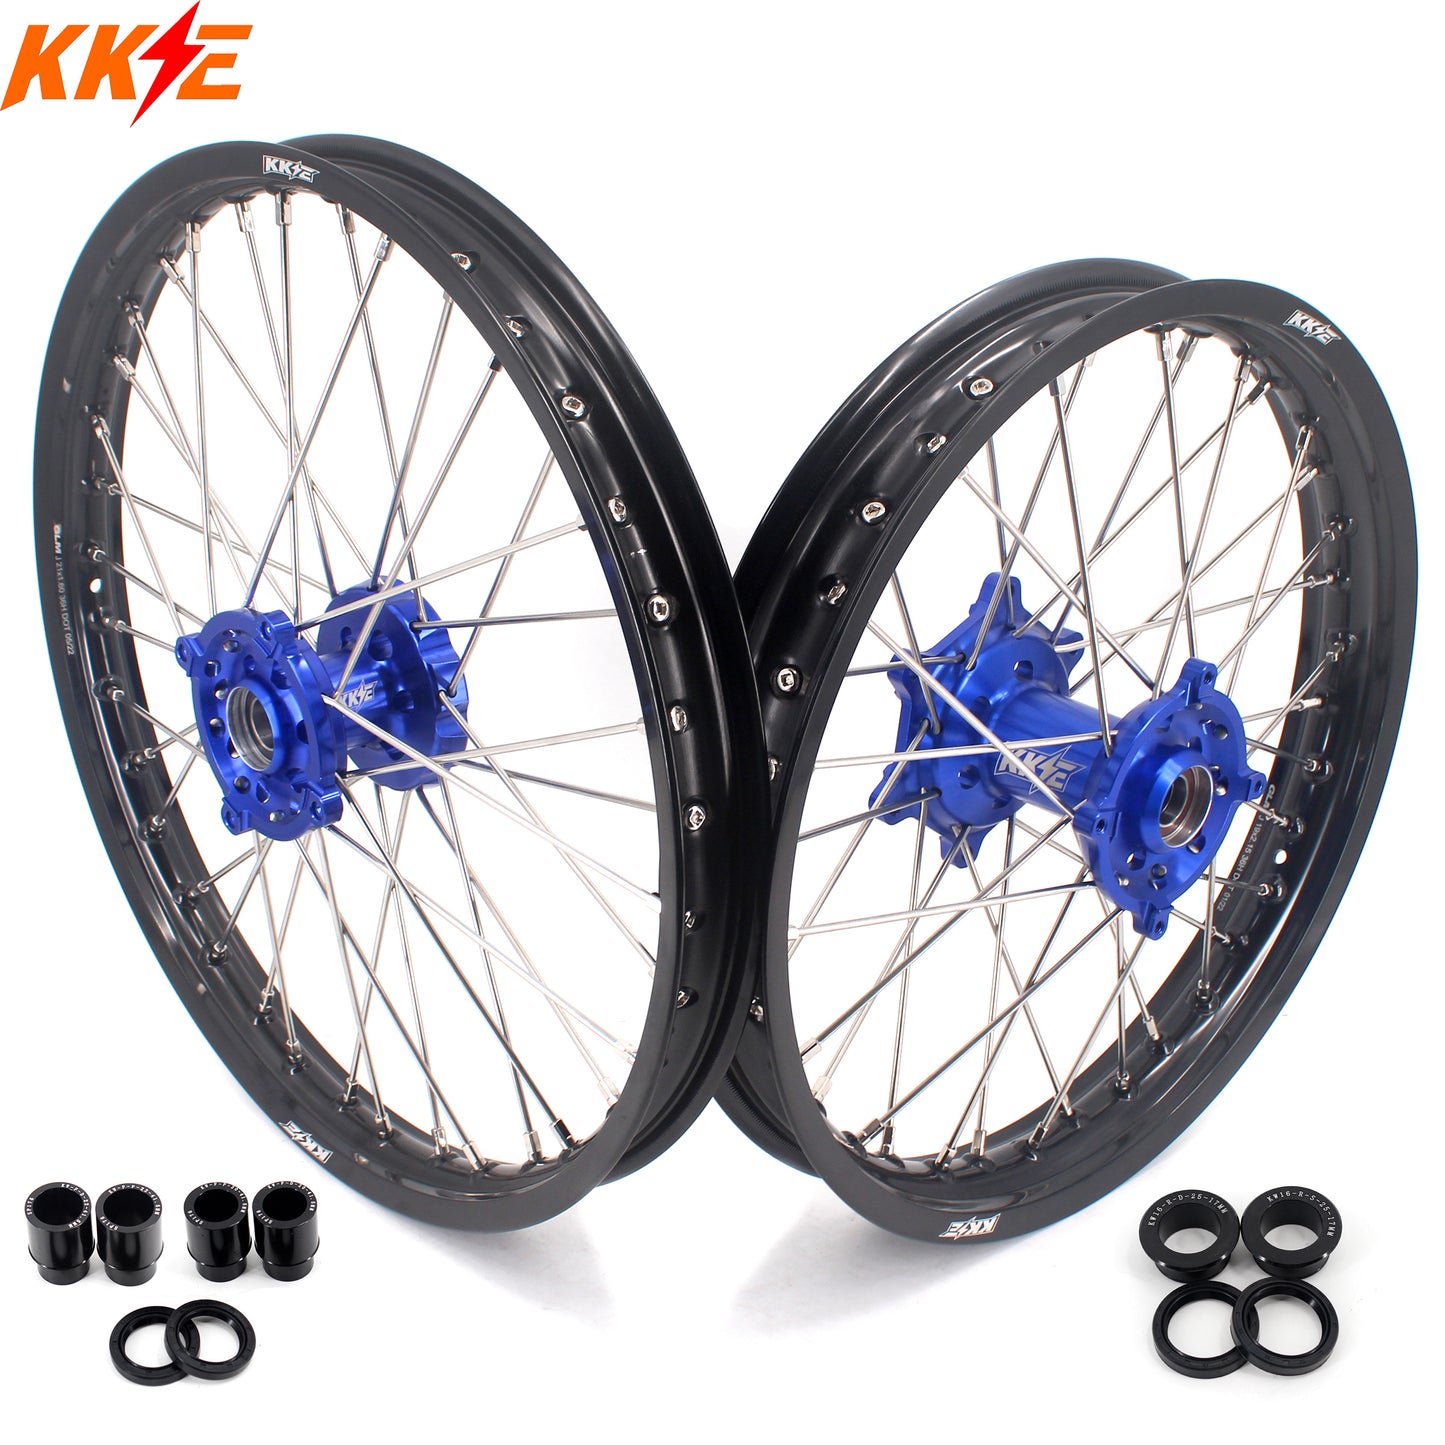 KKE 21/18 Wheels For KAWASAKI KX250F KX450F 2006-2014 KX125 KX250 250mm Disc